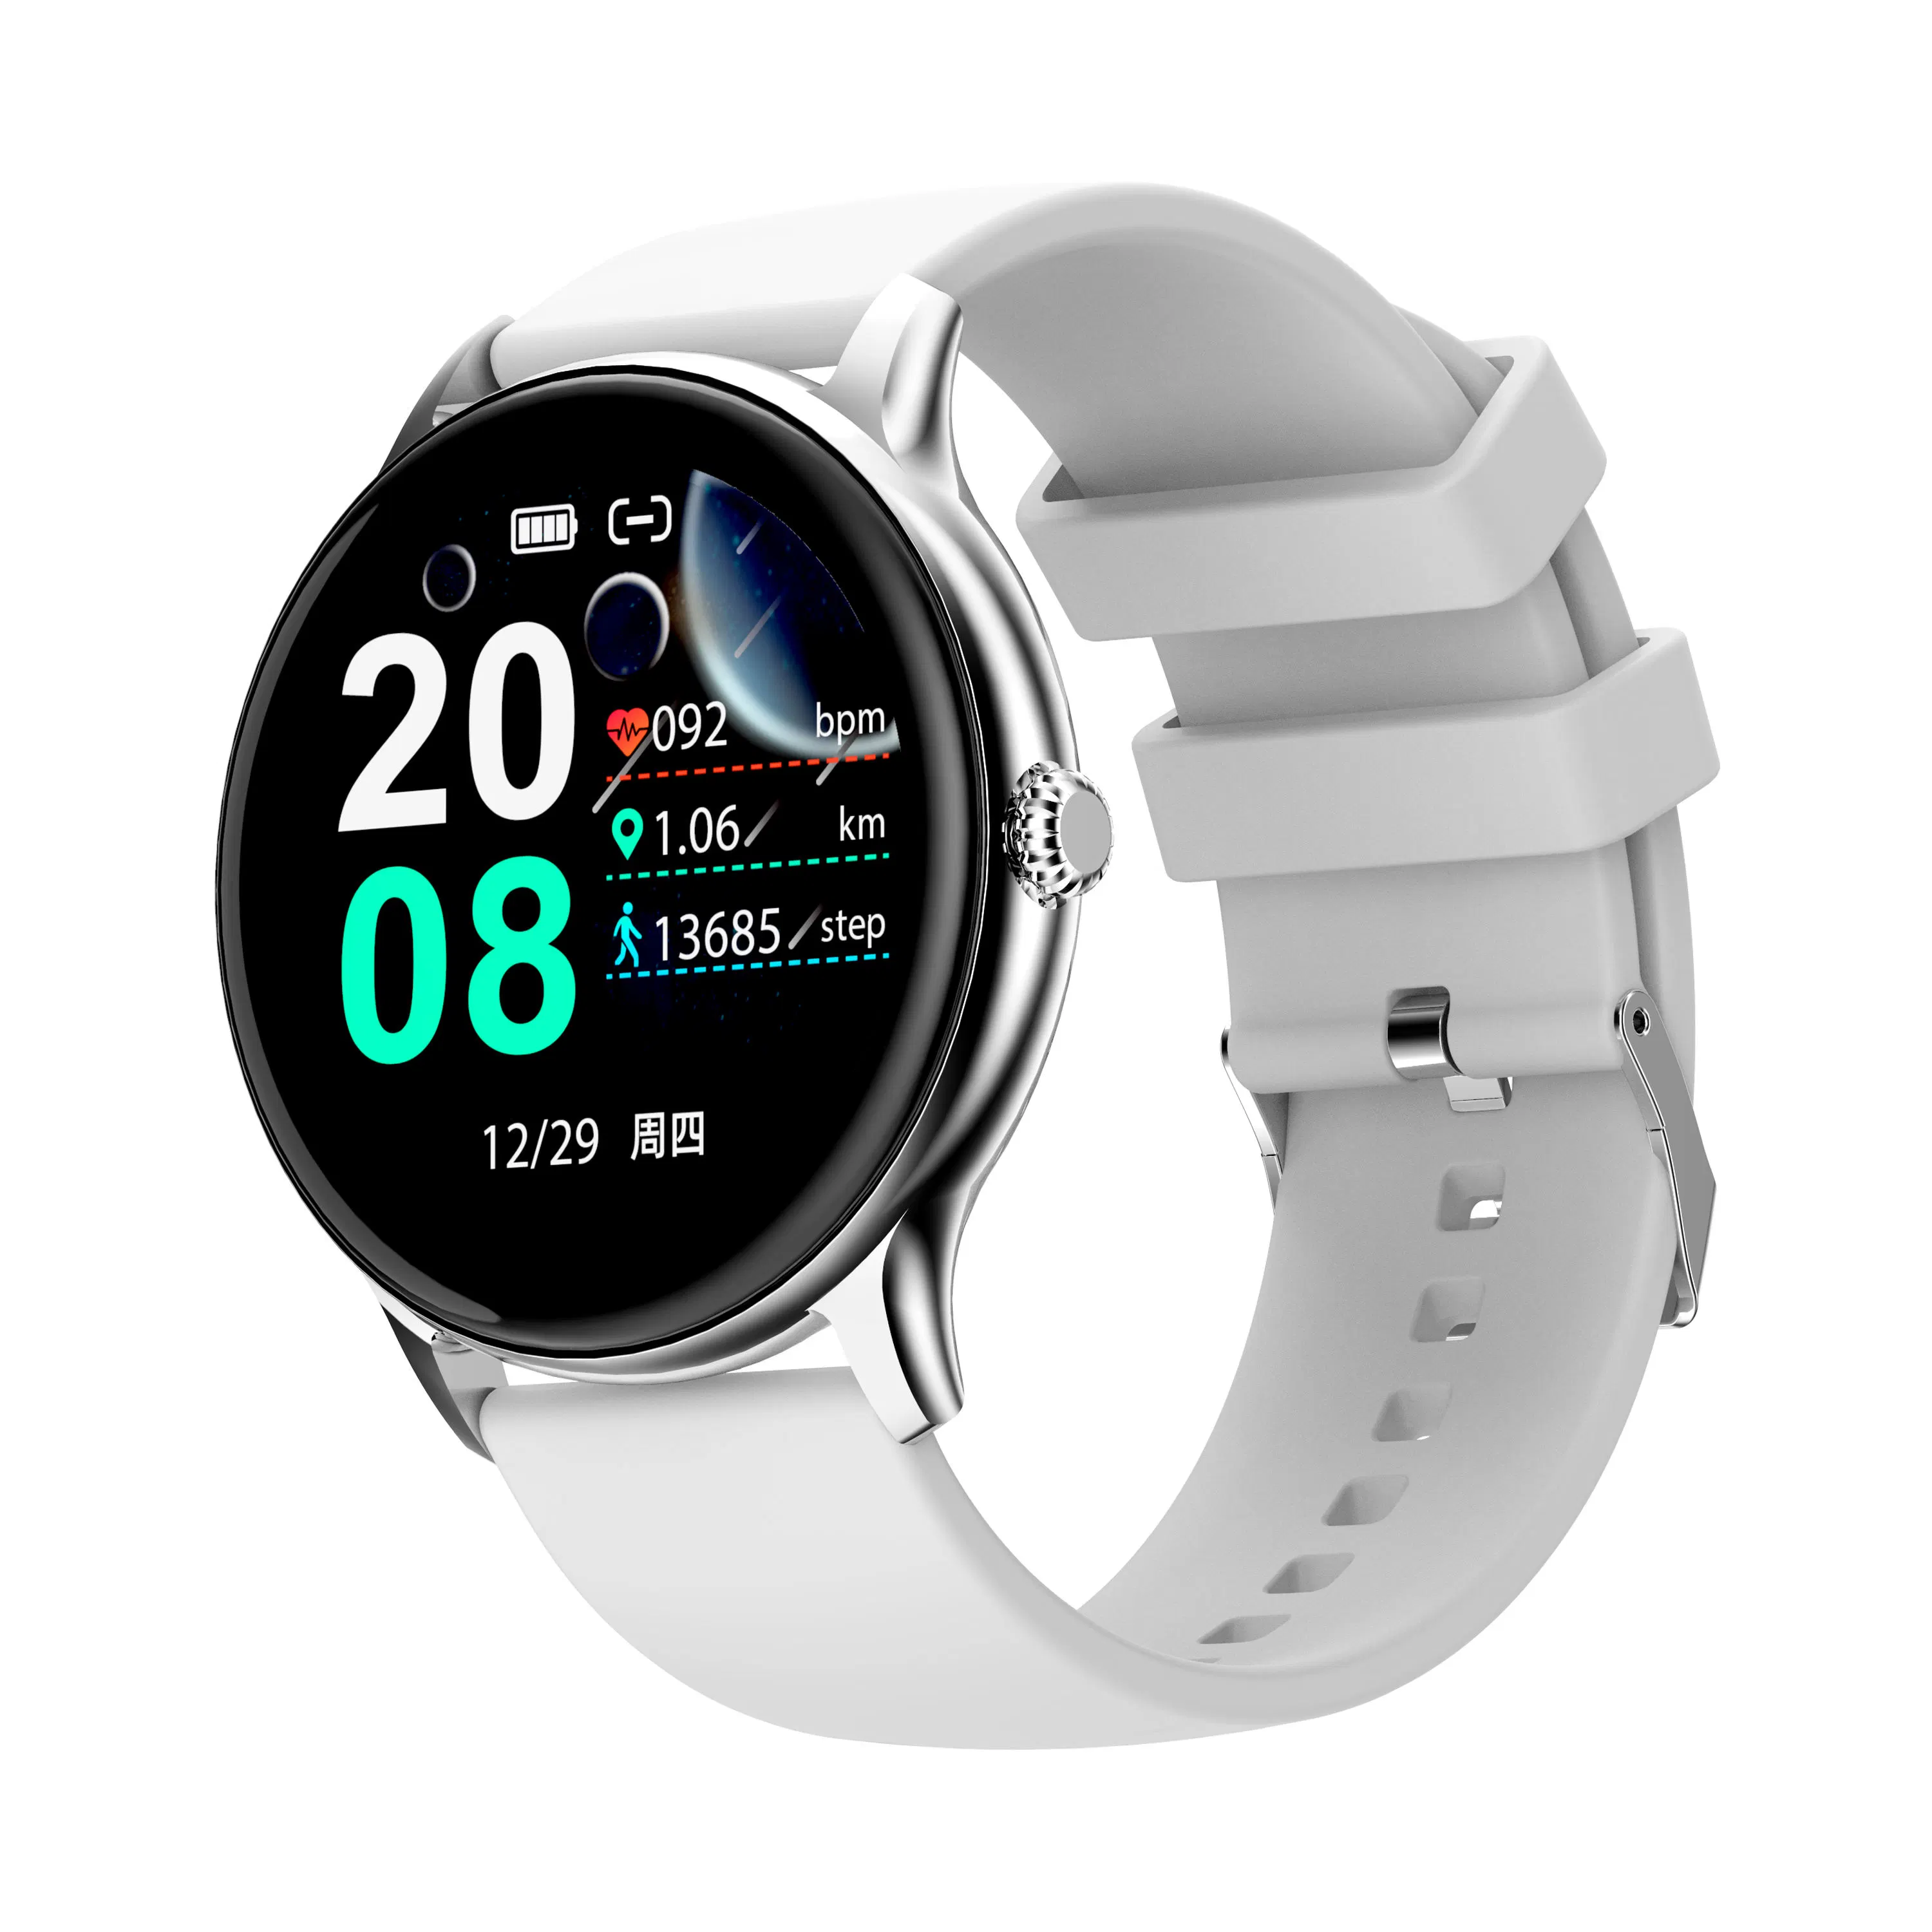 3G Apple WiFi compatible RoHS Smart montre-bracelet montres de regarder la téléphone mobile Bme-Sm chaud1